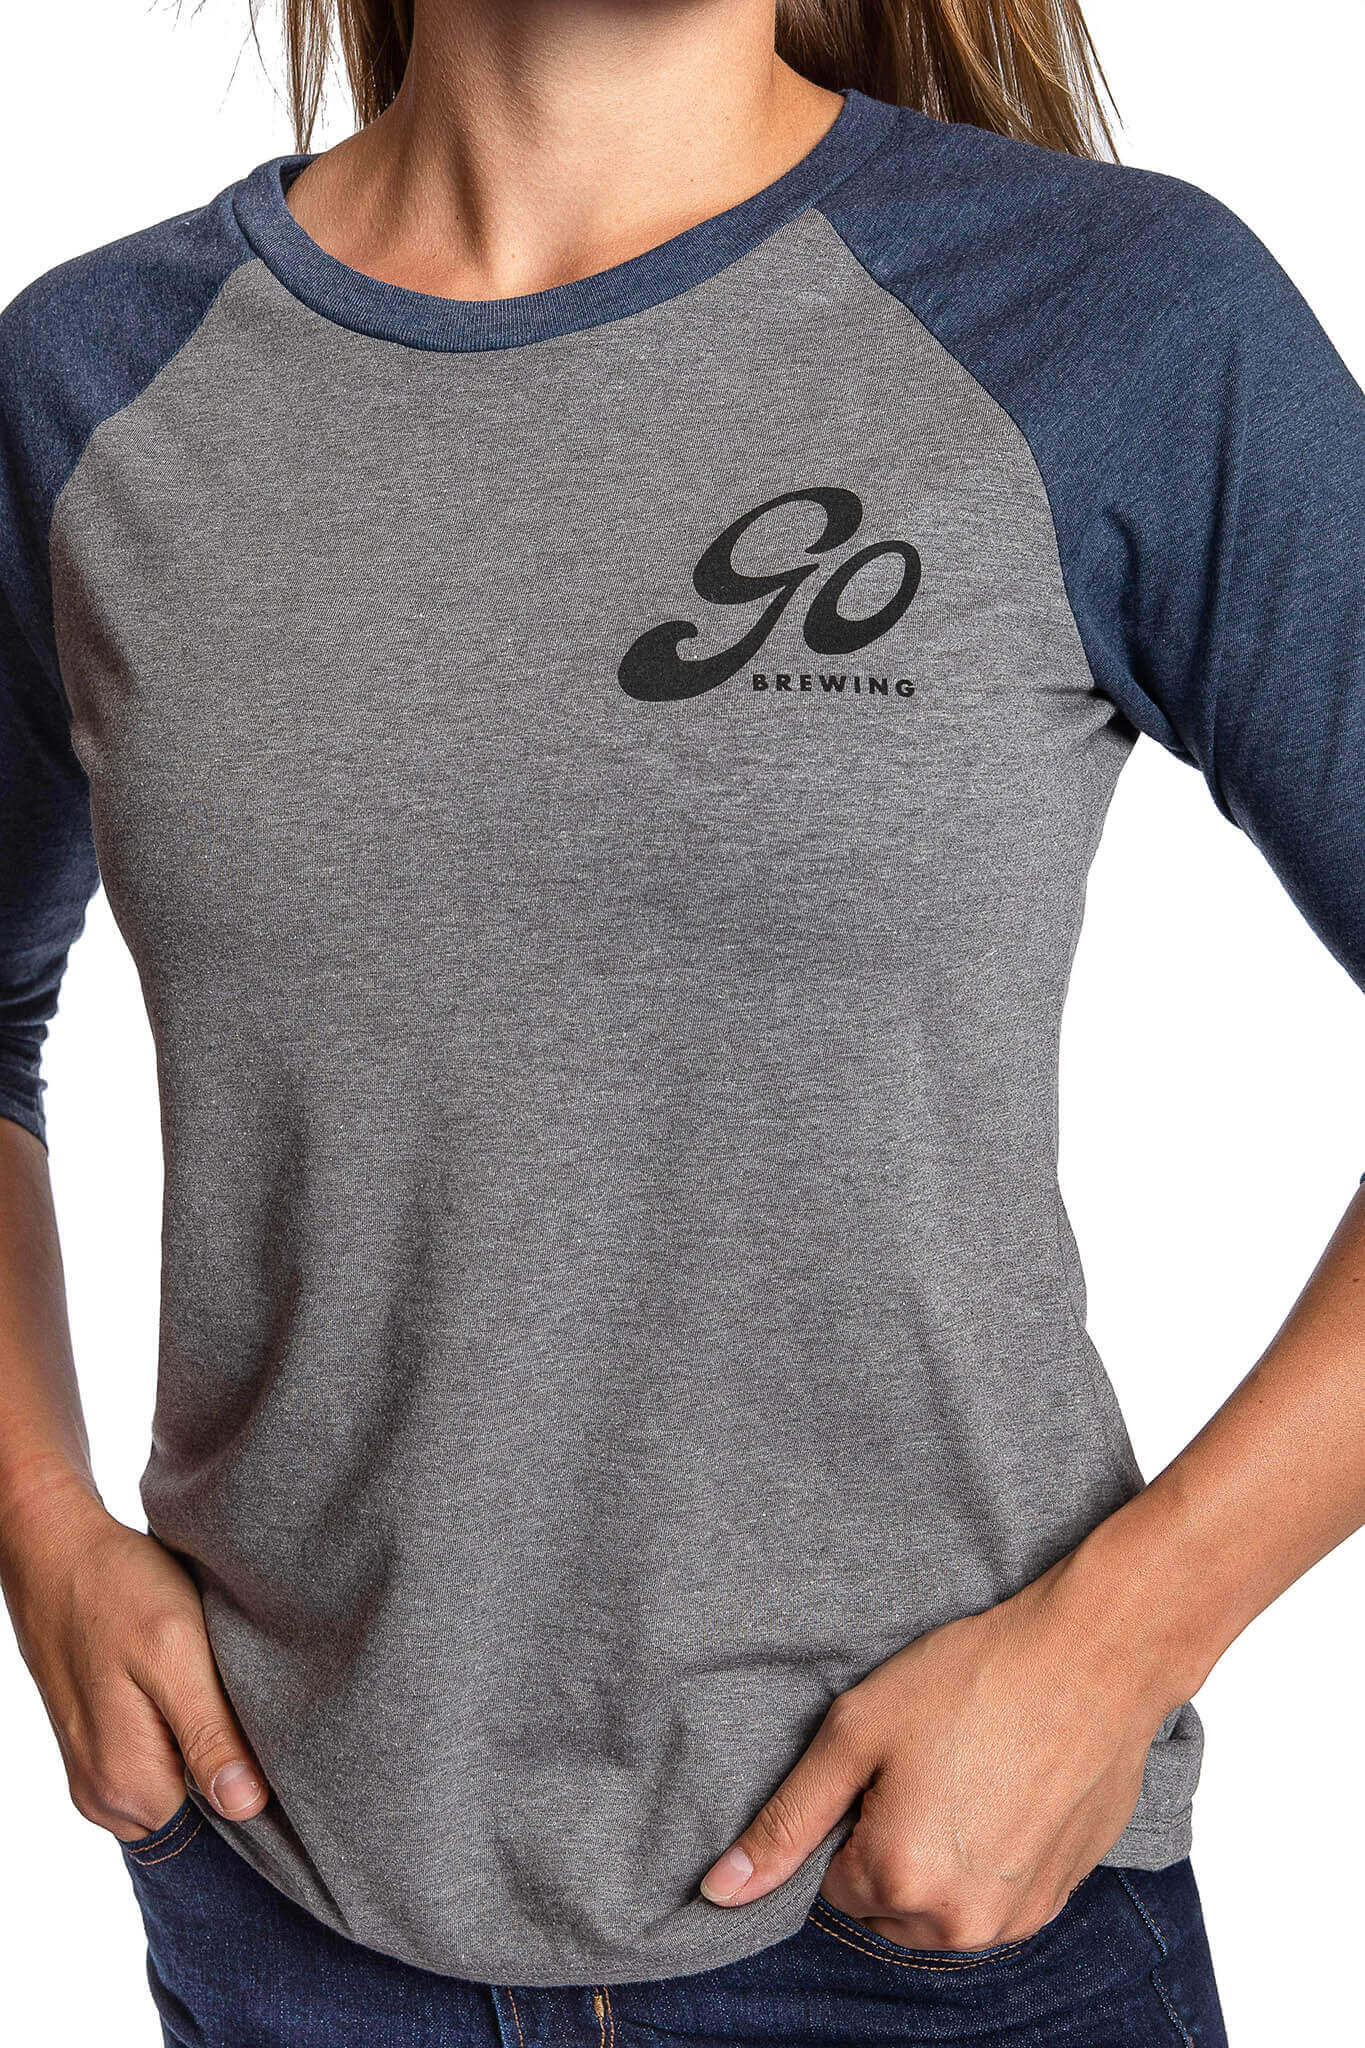 Go Lettermark Women's 3/4 T-Shirt